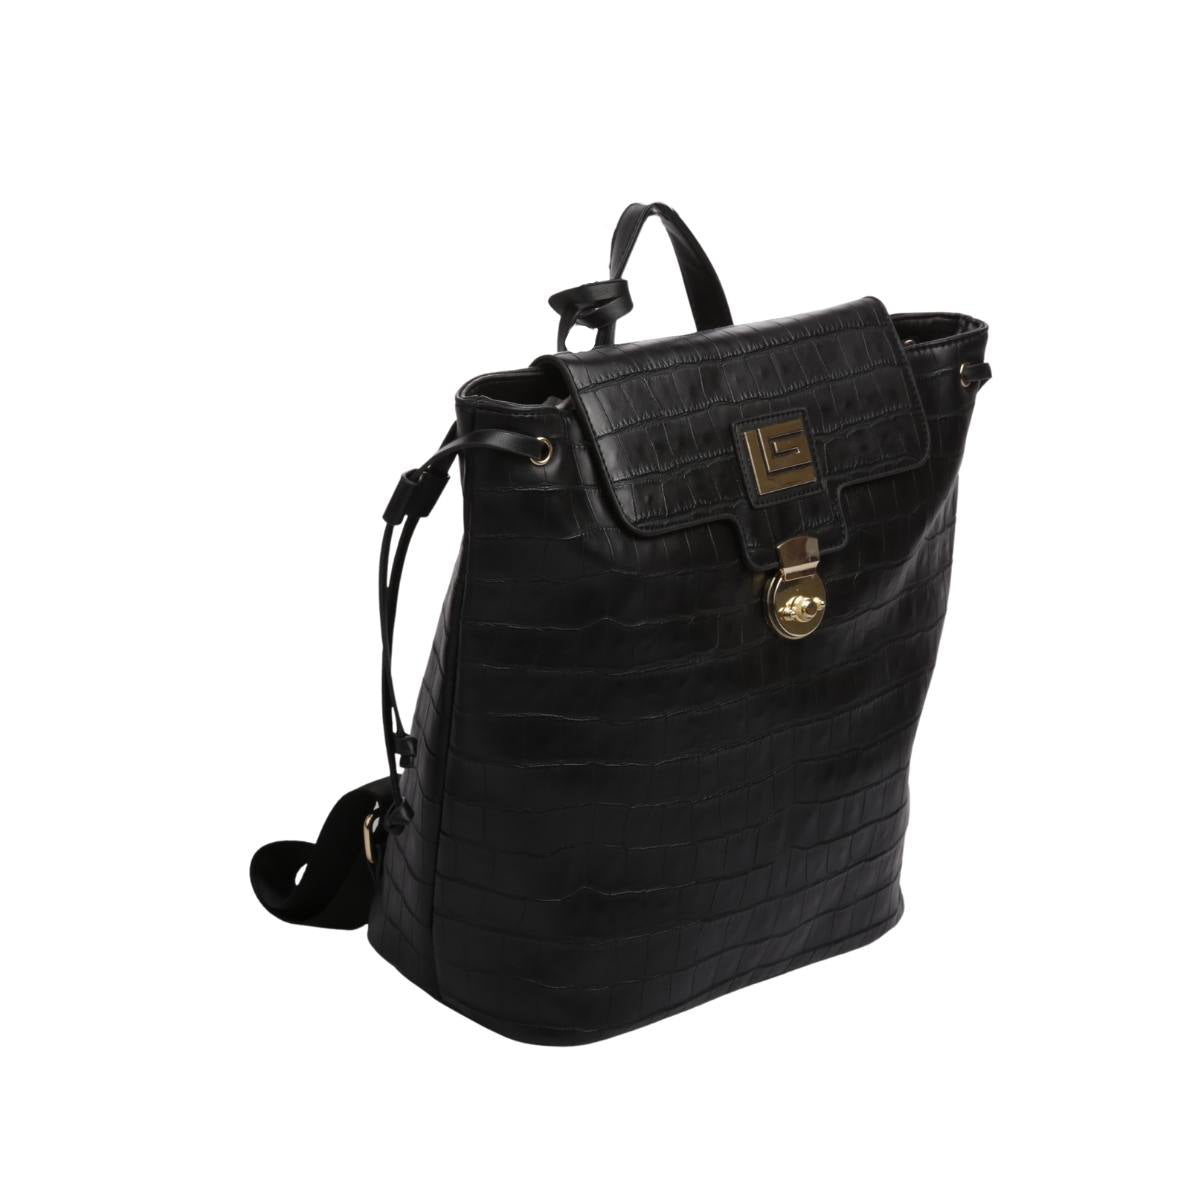 Backpack [Guy Laroche] con diseño animal print estilo piel de cocodrilo con broche frontal color negro